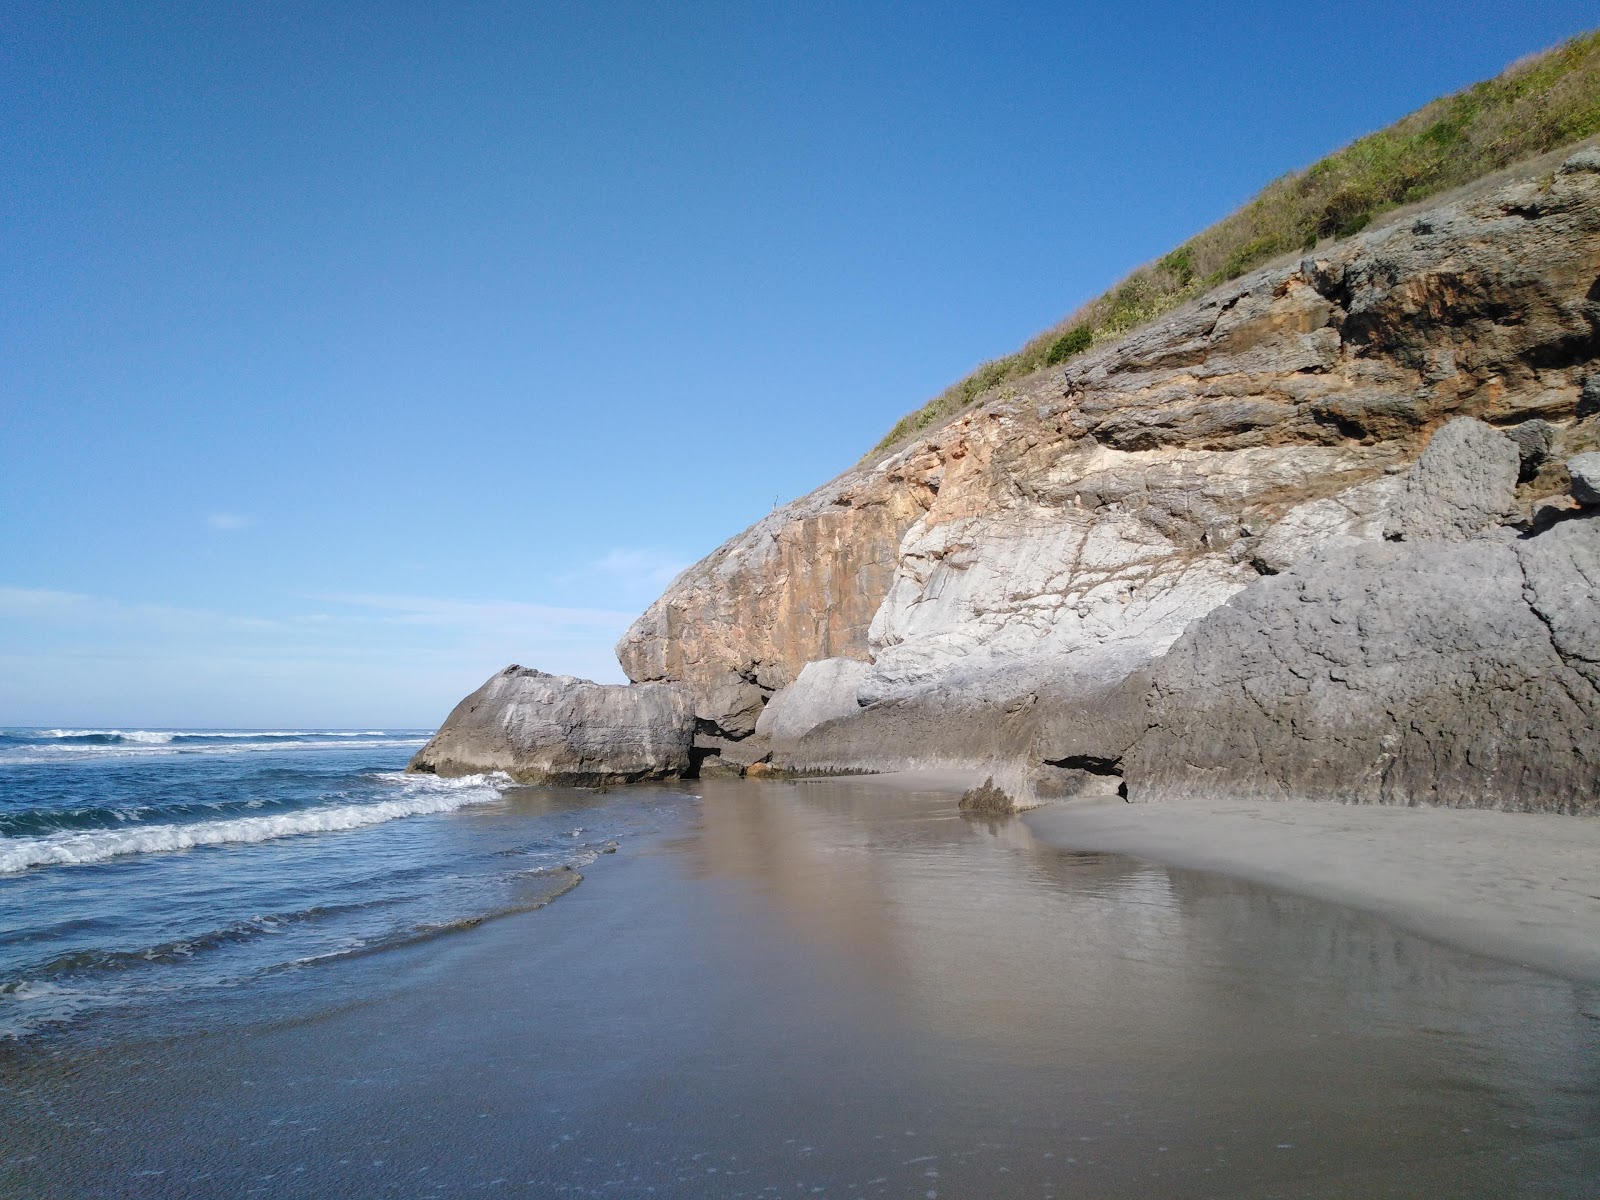 Zdjęcie Playa las Brisas - popularne miejsce wśród znawców relaksu